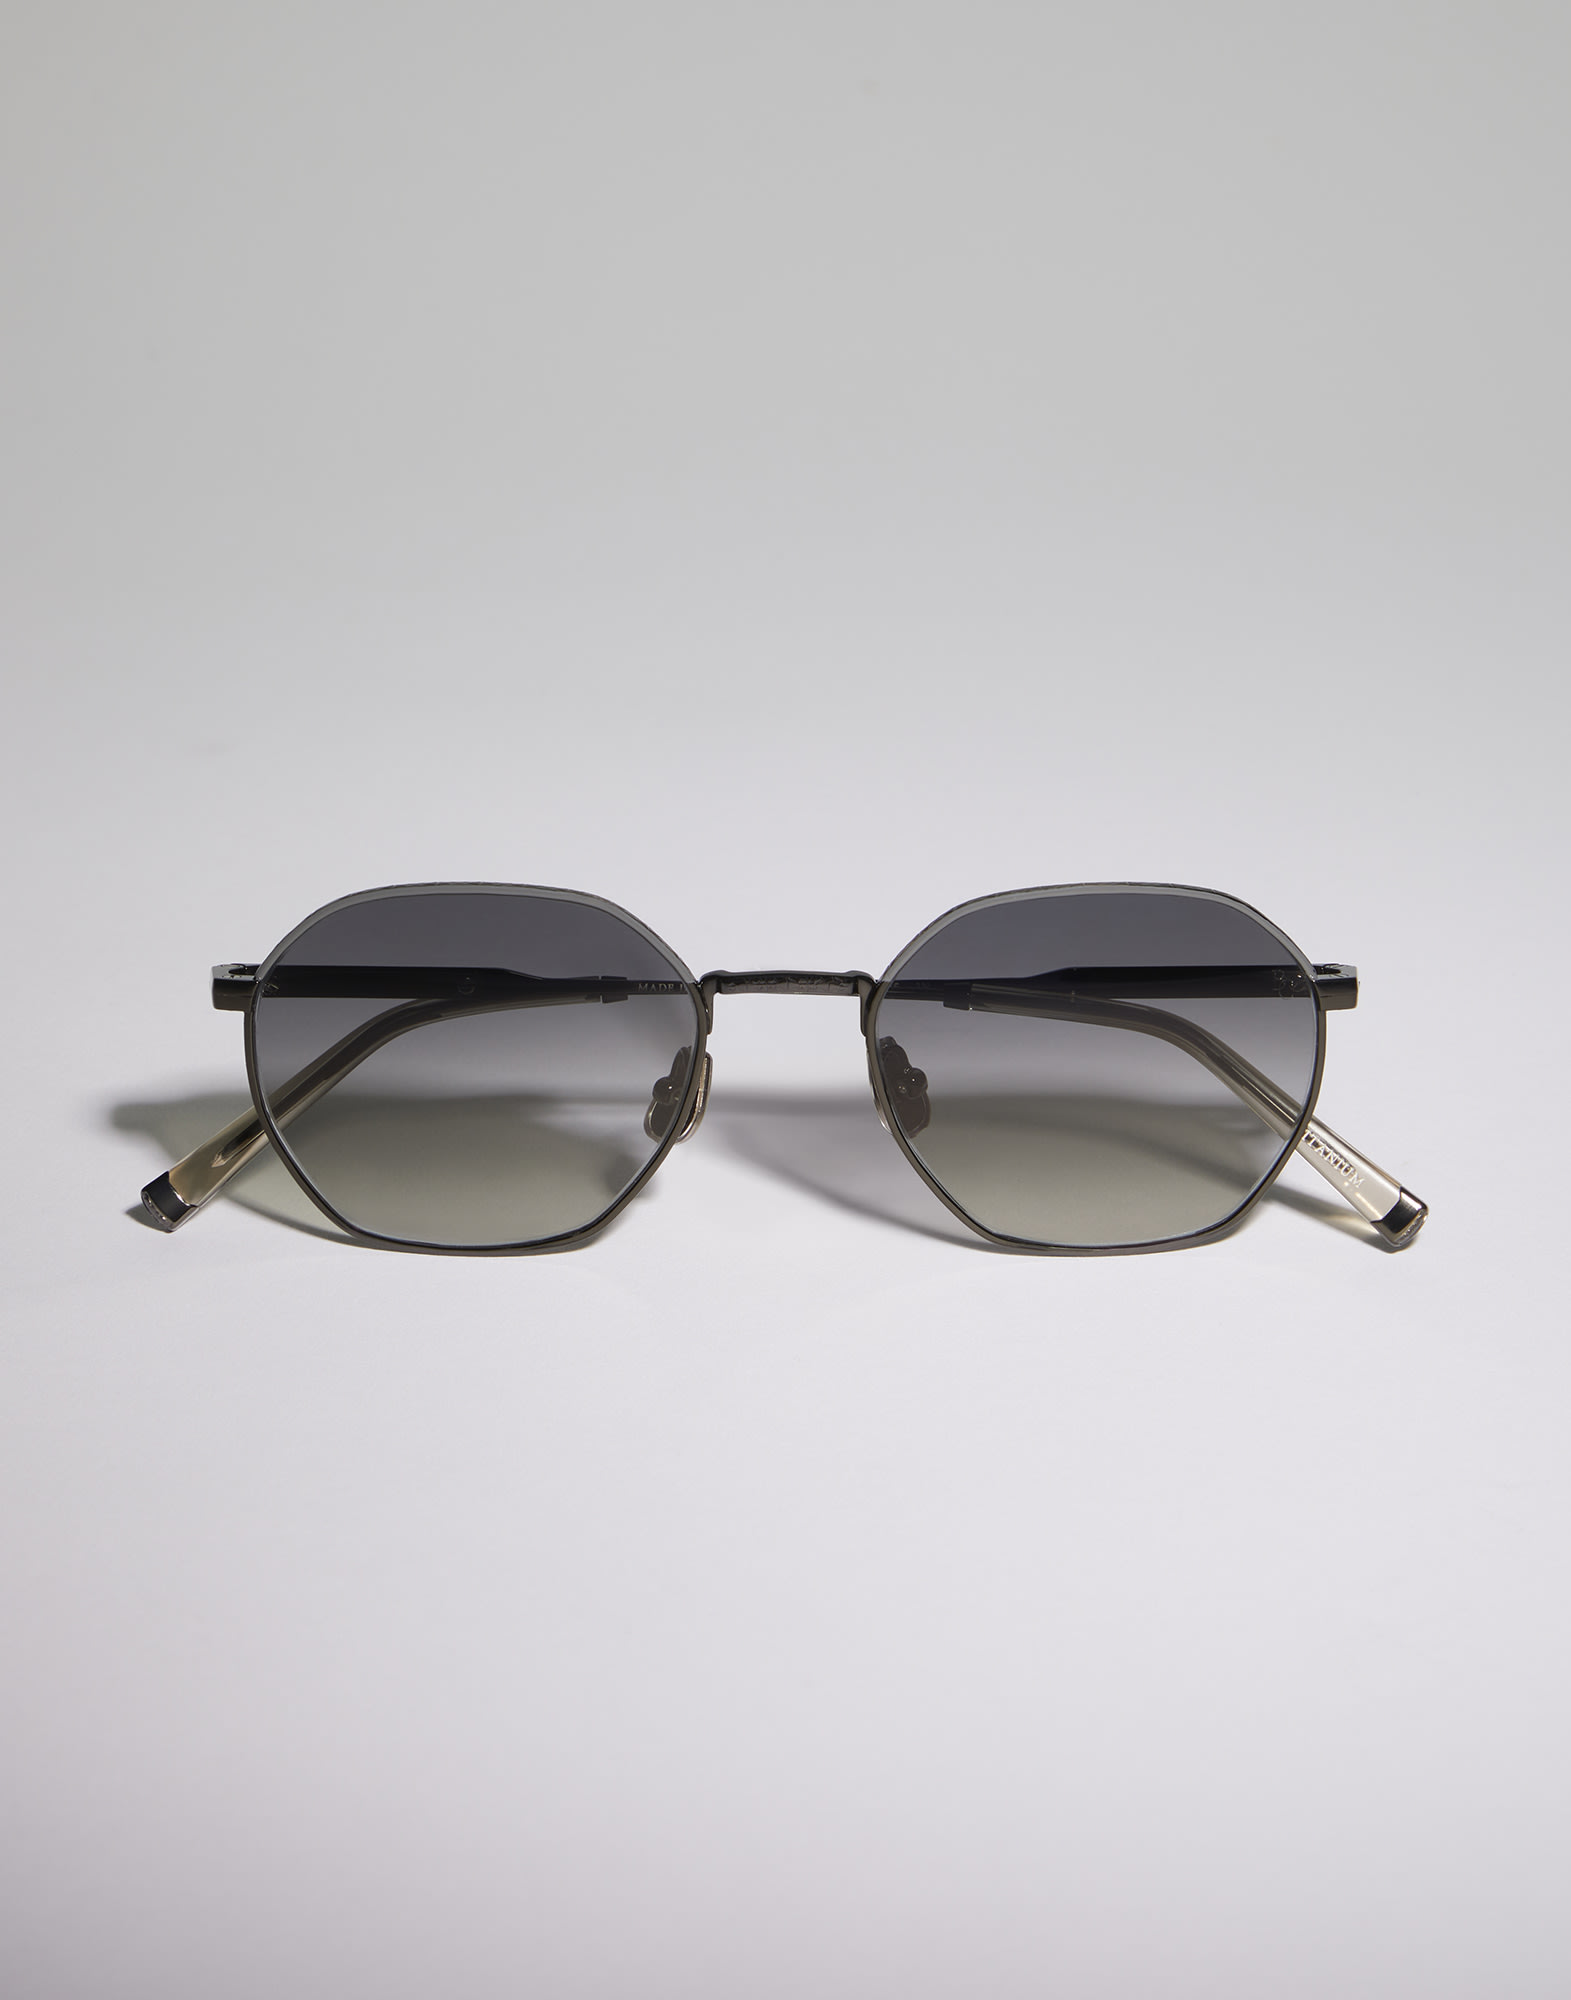 Geometric titanium sunglasses